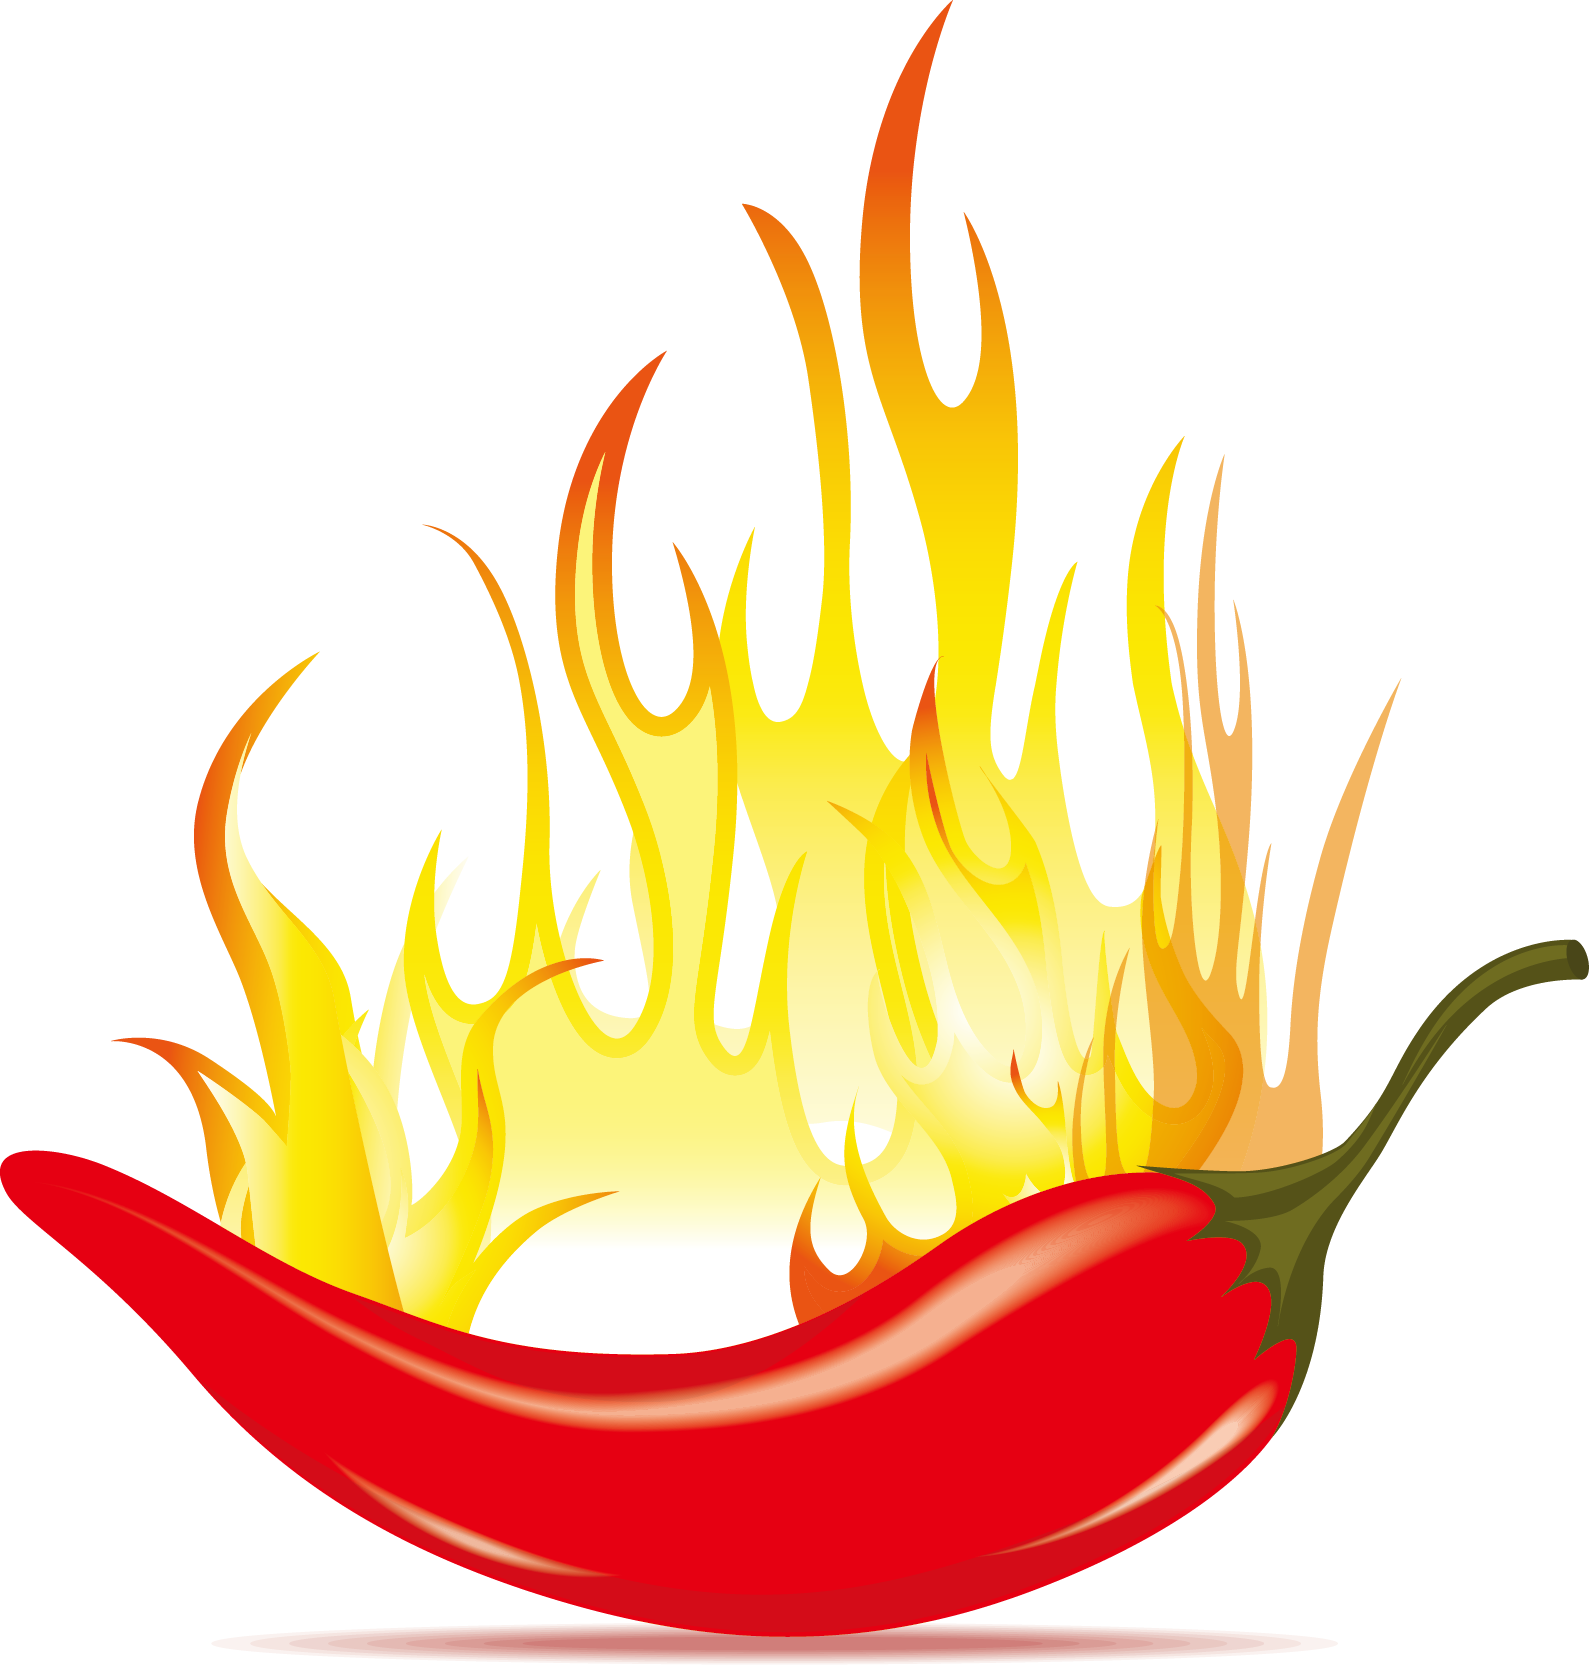 Chili Con Carne Chili Pepper Clip Art - Red Hot Chili Vector.